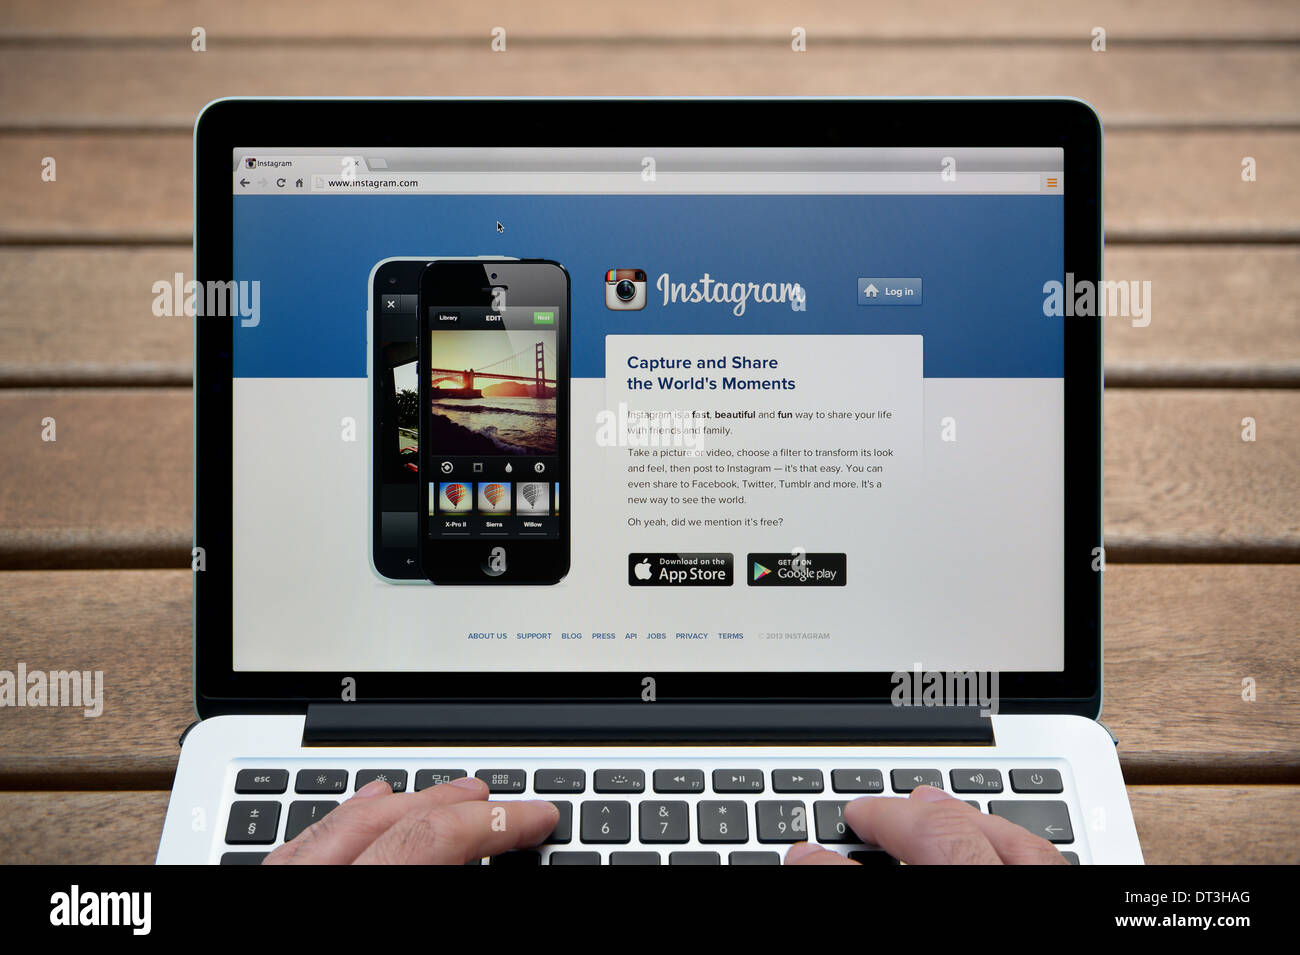 El sitio web de Instagram en un MacBook contra un banco de madera de fondo al aire libre incluyendo un hombre de dedos (uso Editorial solamente). Foto de stock